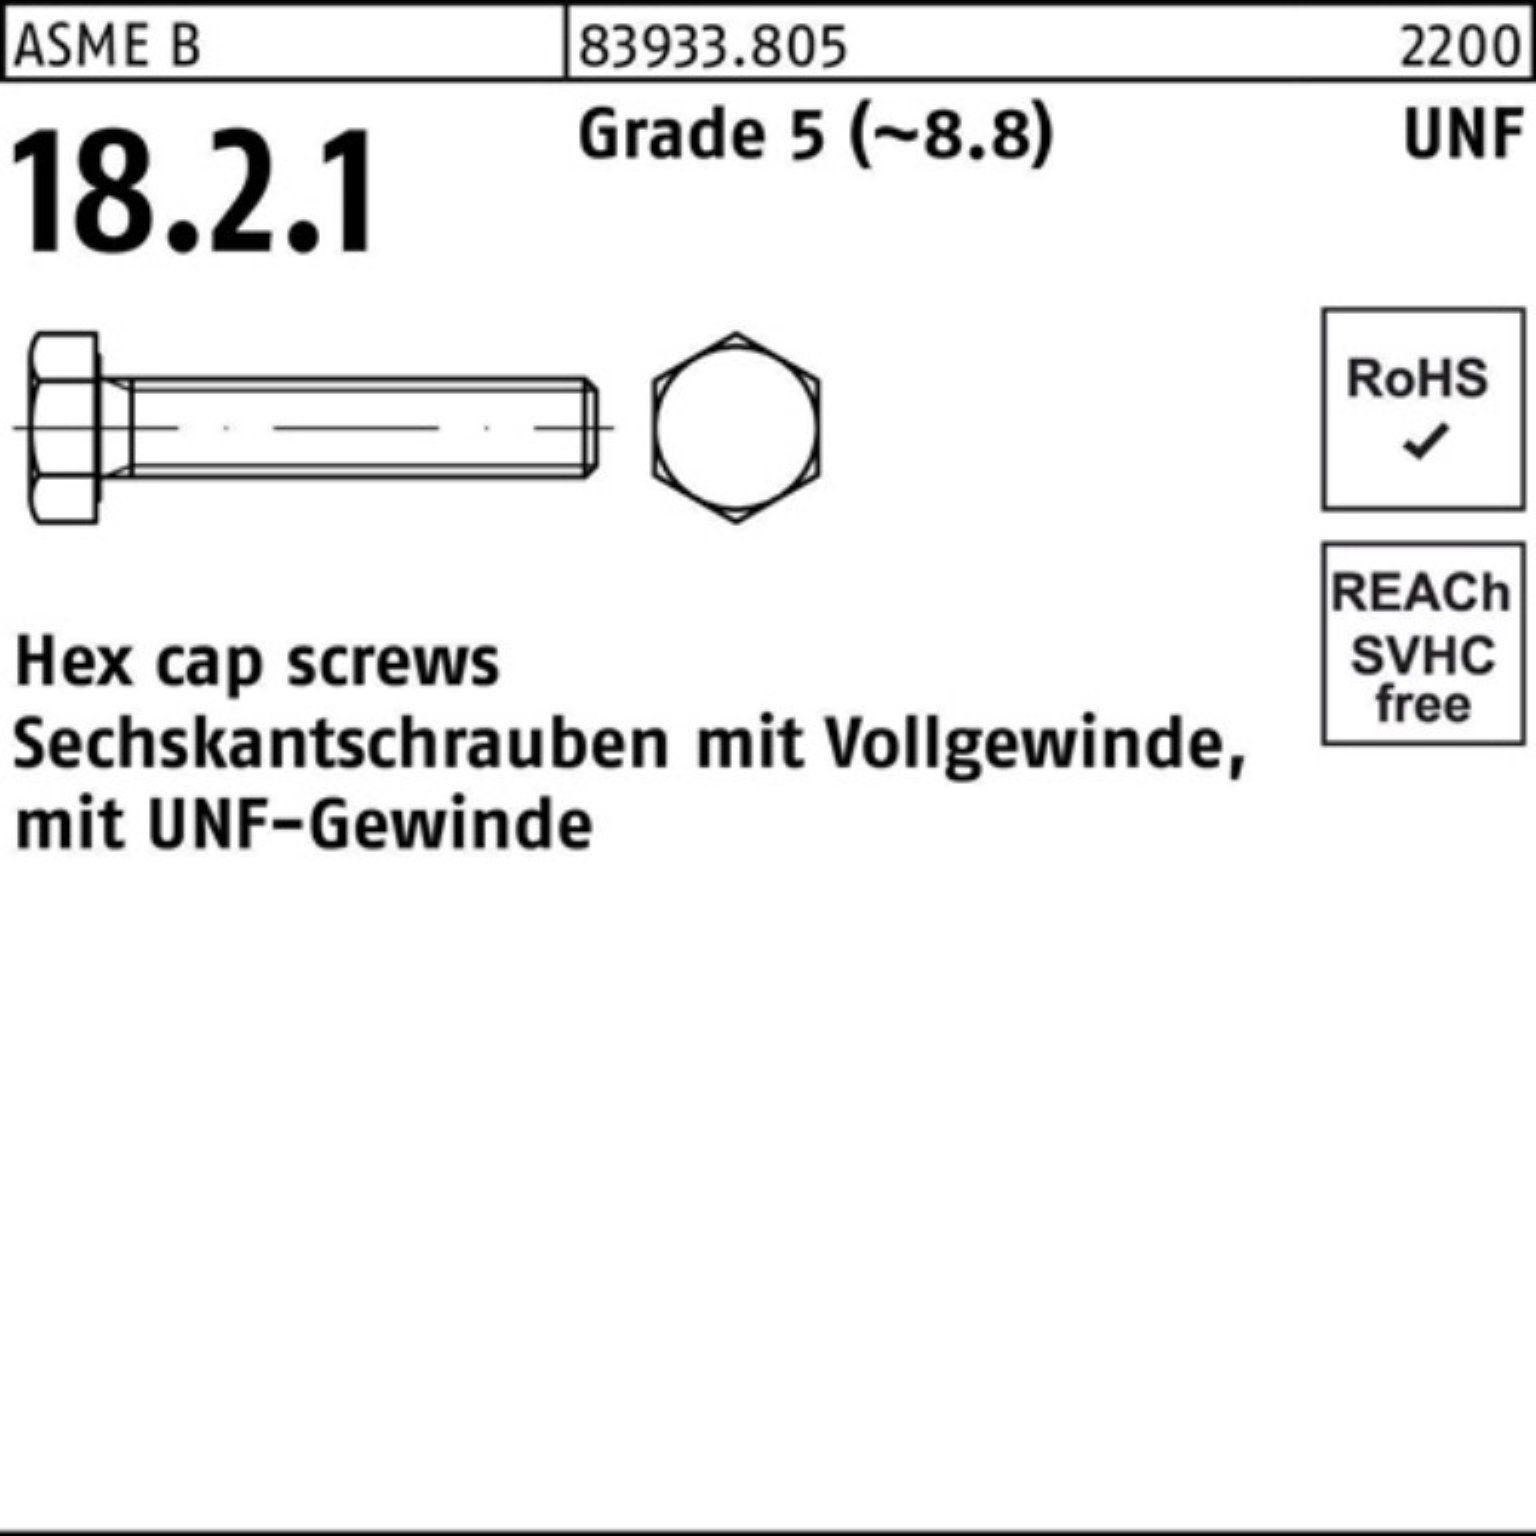 Reyher Sechskantschraube 100er Pack Sechskantschraube R 83933 UNF-Gewinde VG 1/4x 5/8 Grade 5 | Schrauben